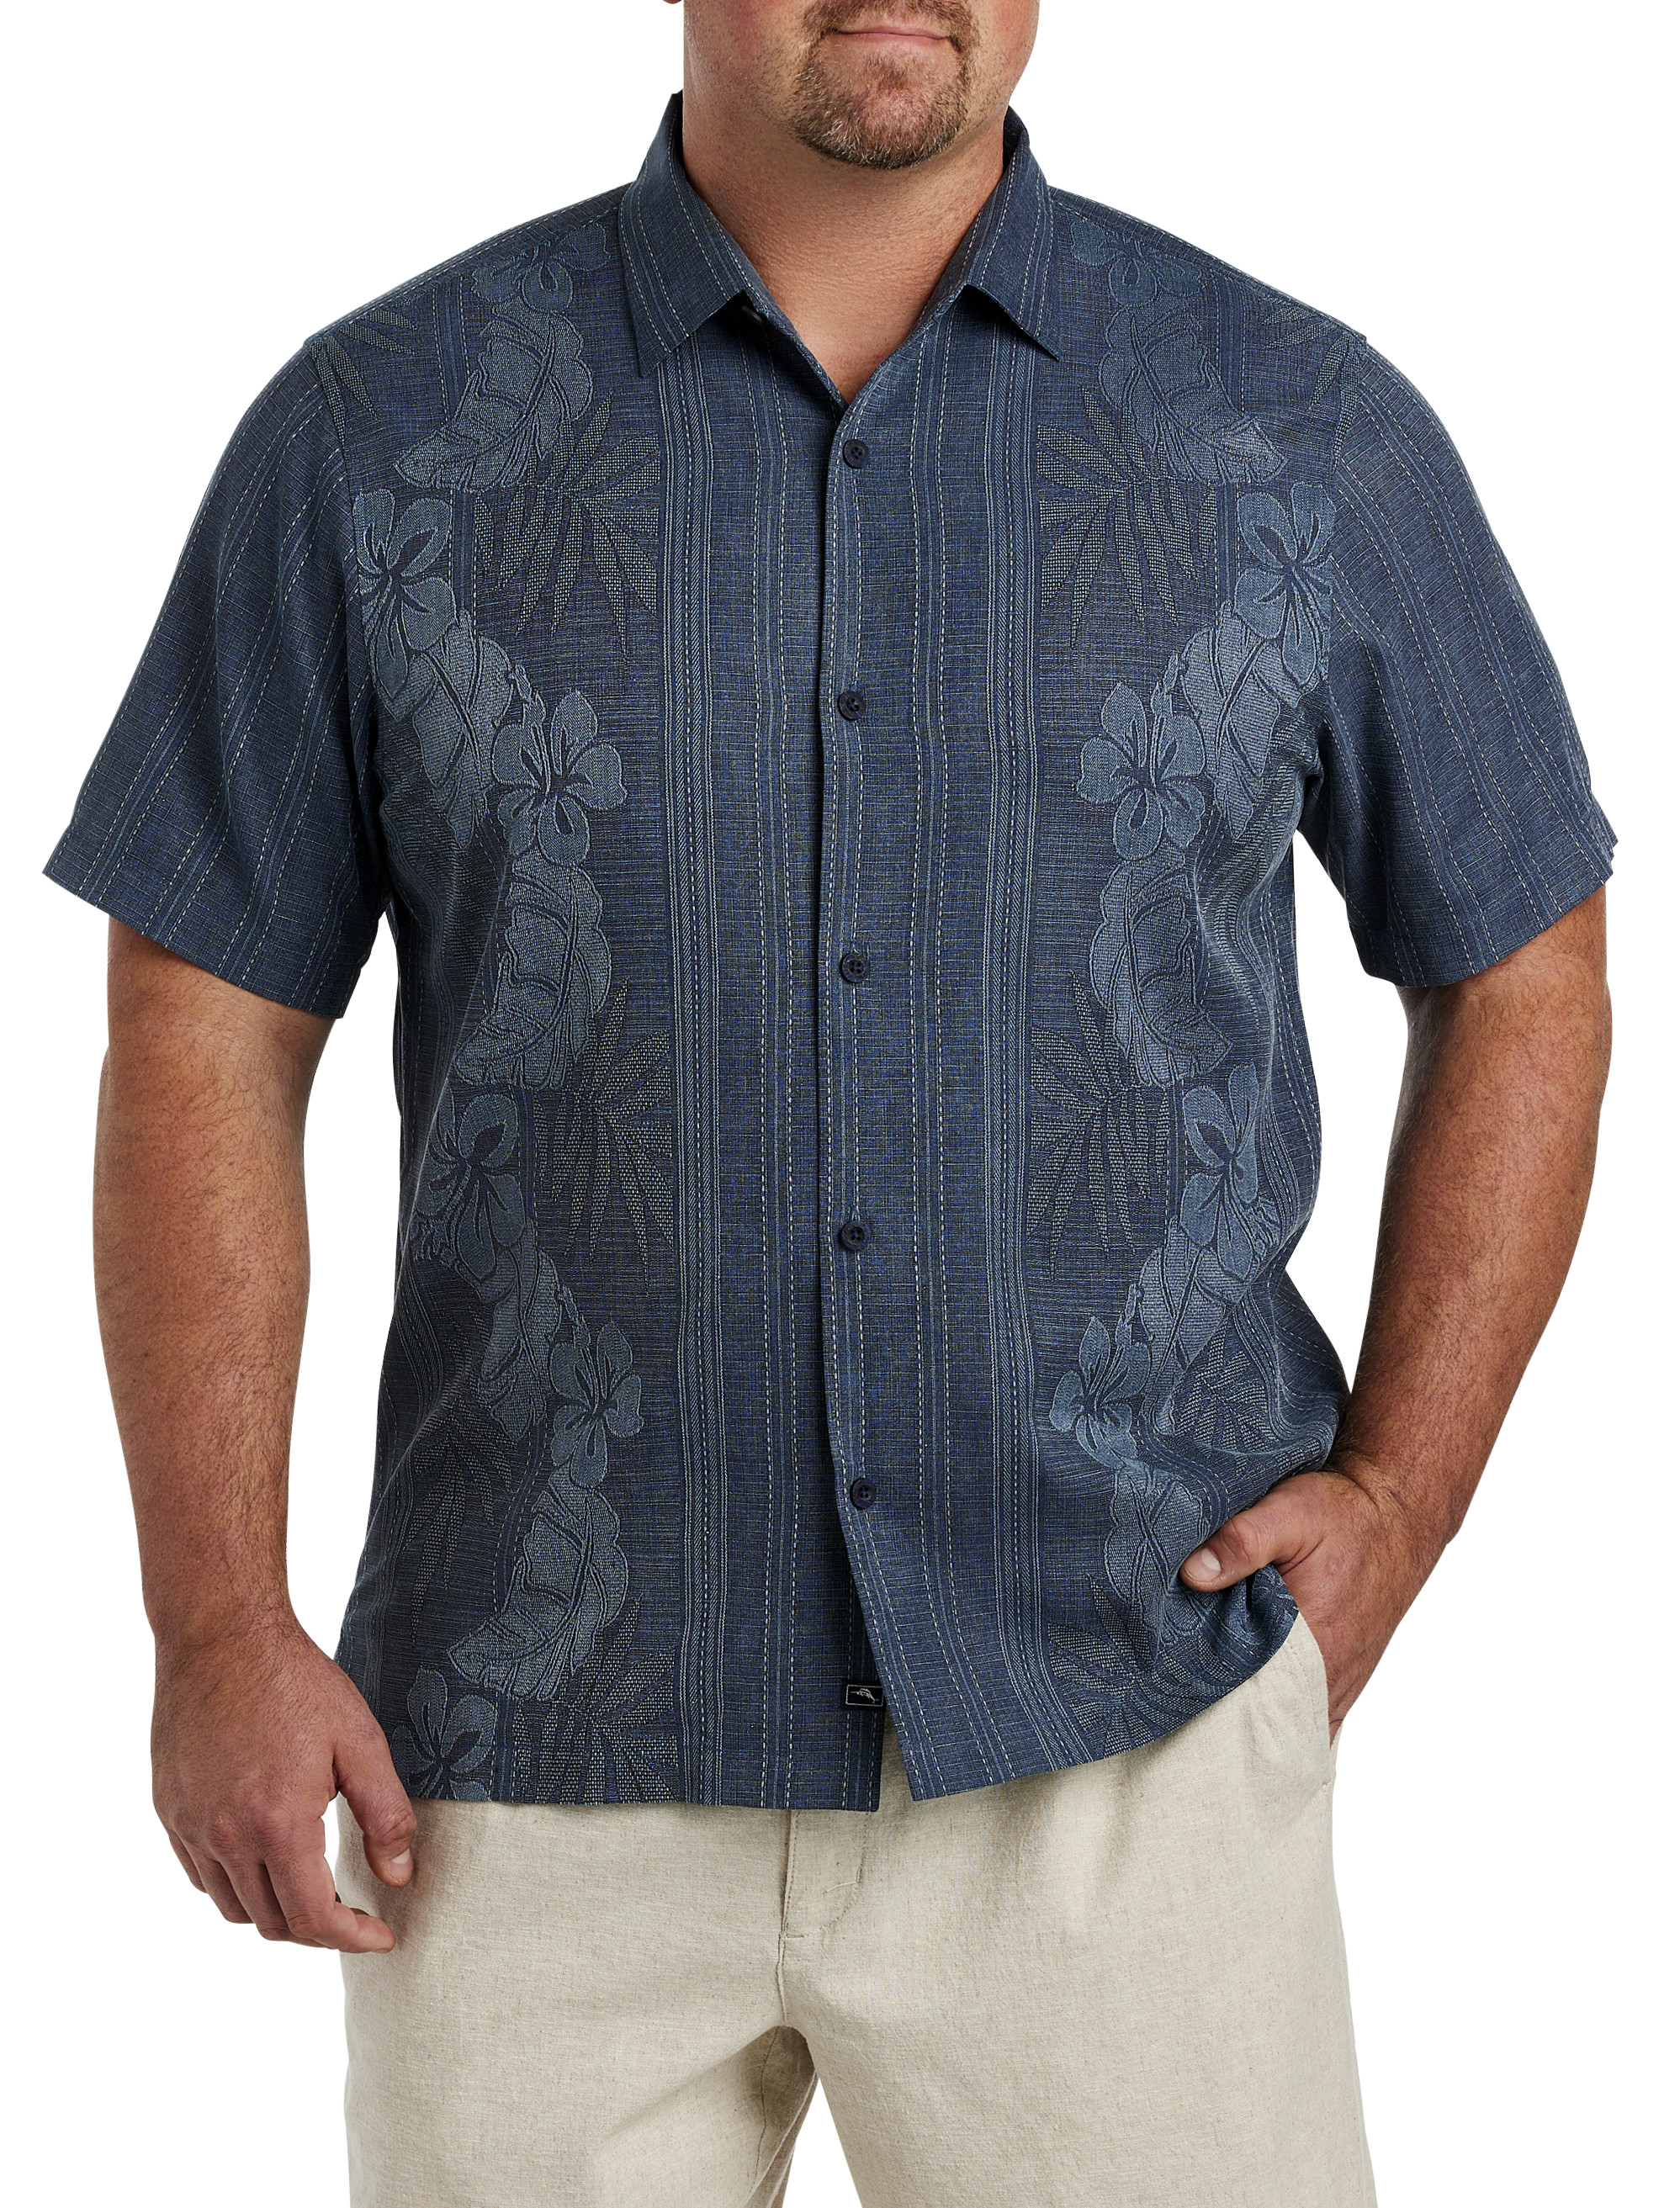 Tommy Bahama Men's Shirt - Khaki - XL